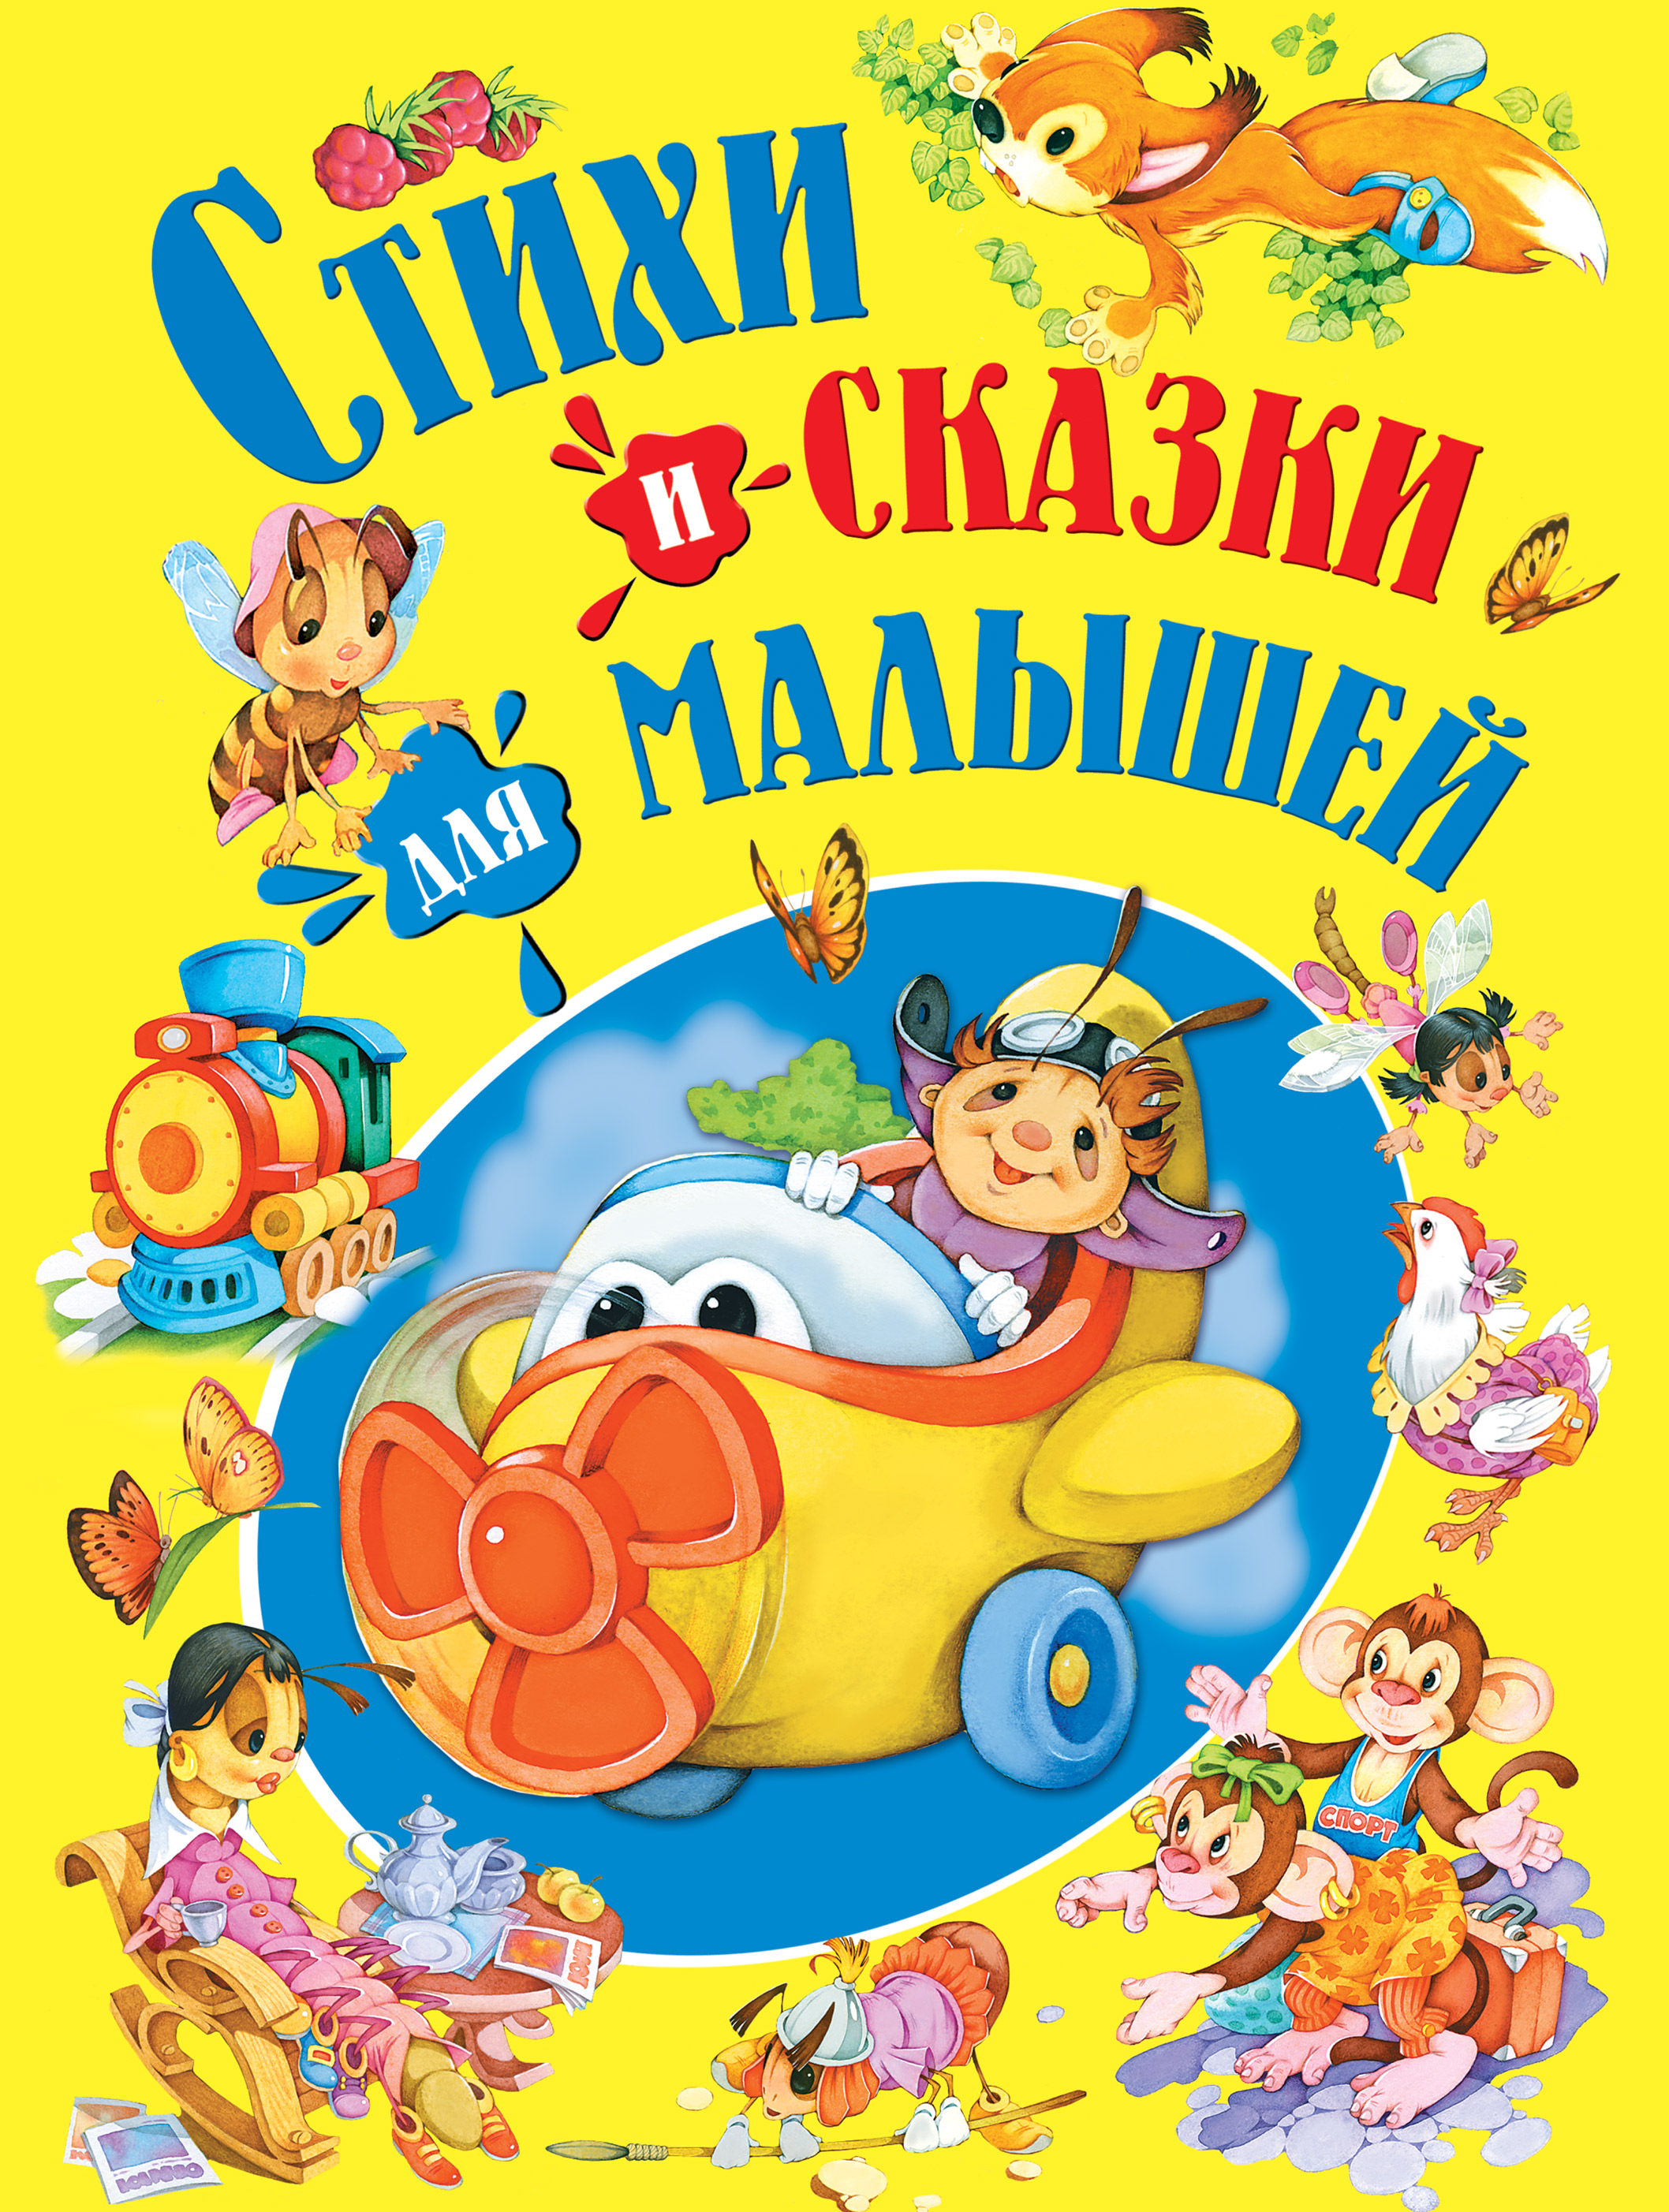 Сказки для самых маленьких детей: Сказка Кто сказал мяу - Владимир Сутеев, читать онлайн